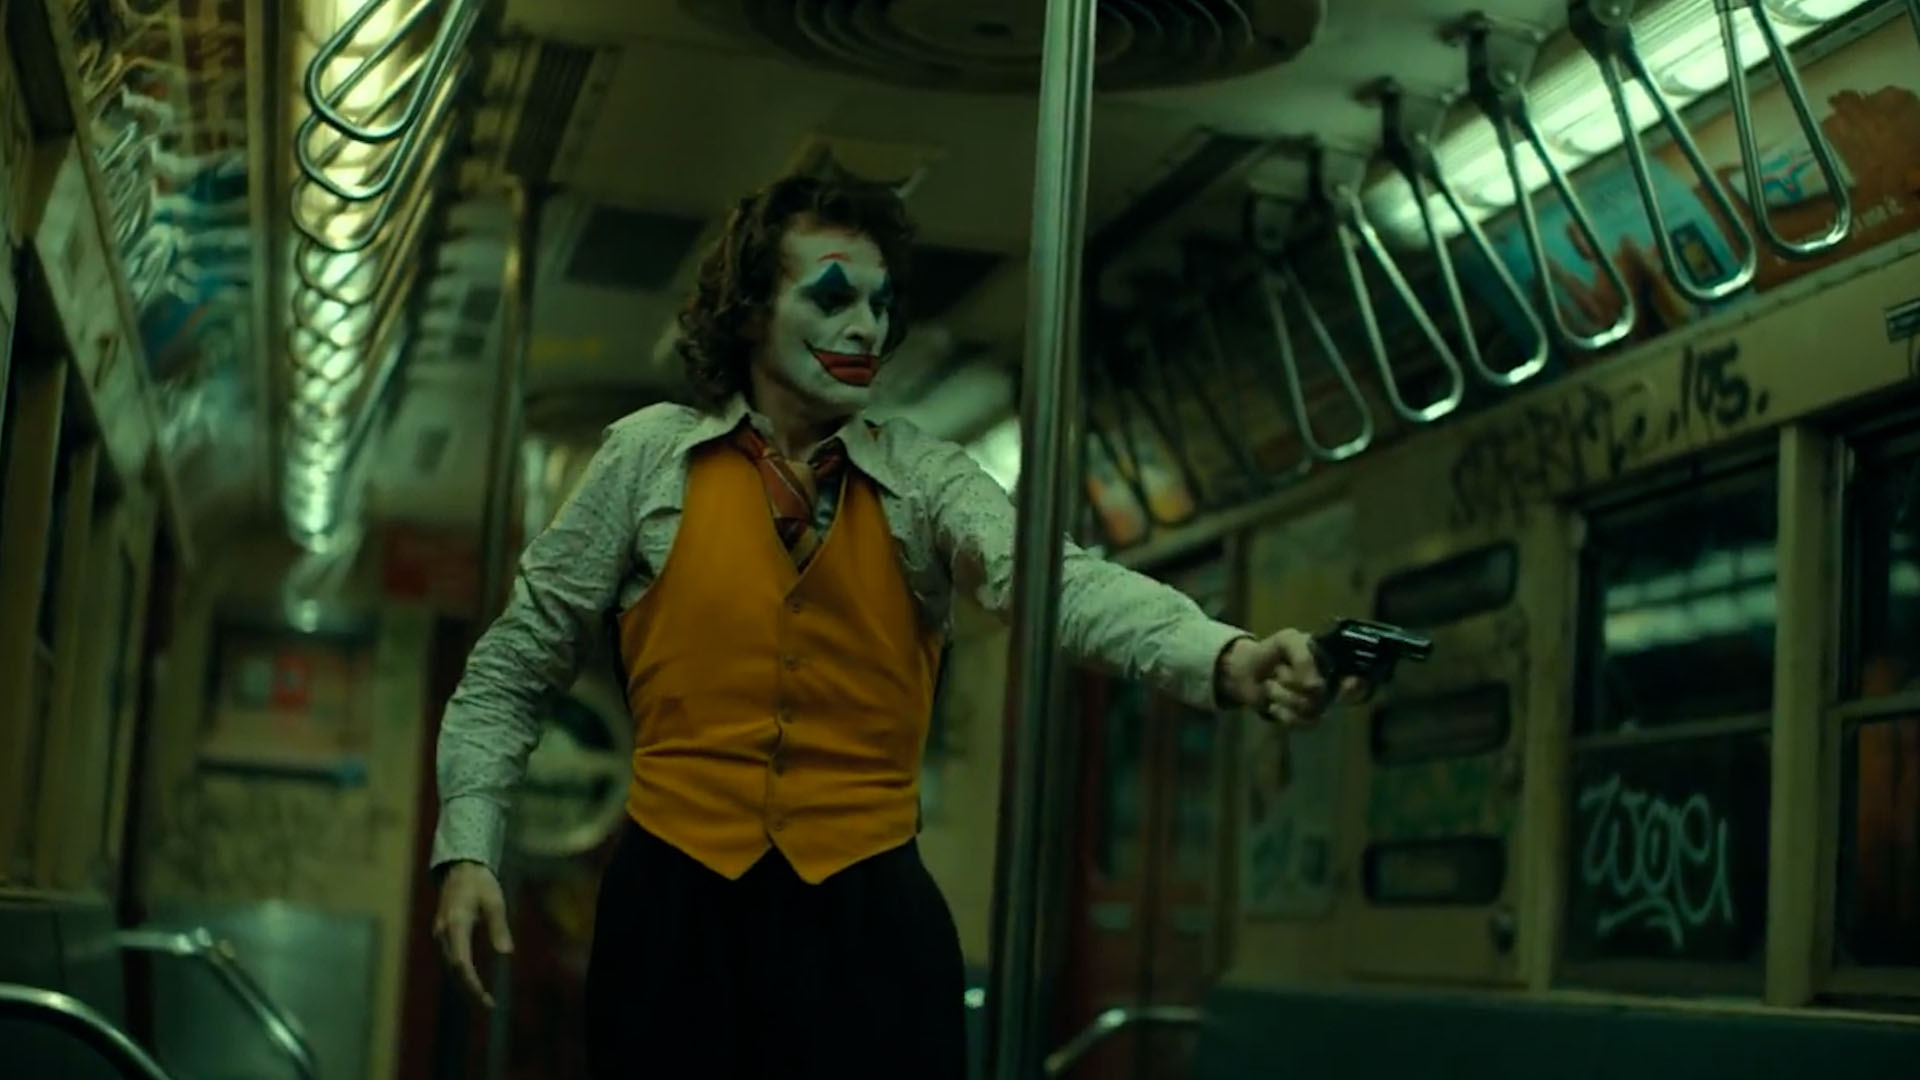 Imágenes de "Joker", película original. (Warner Bros.)